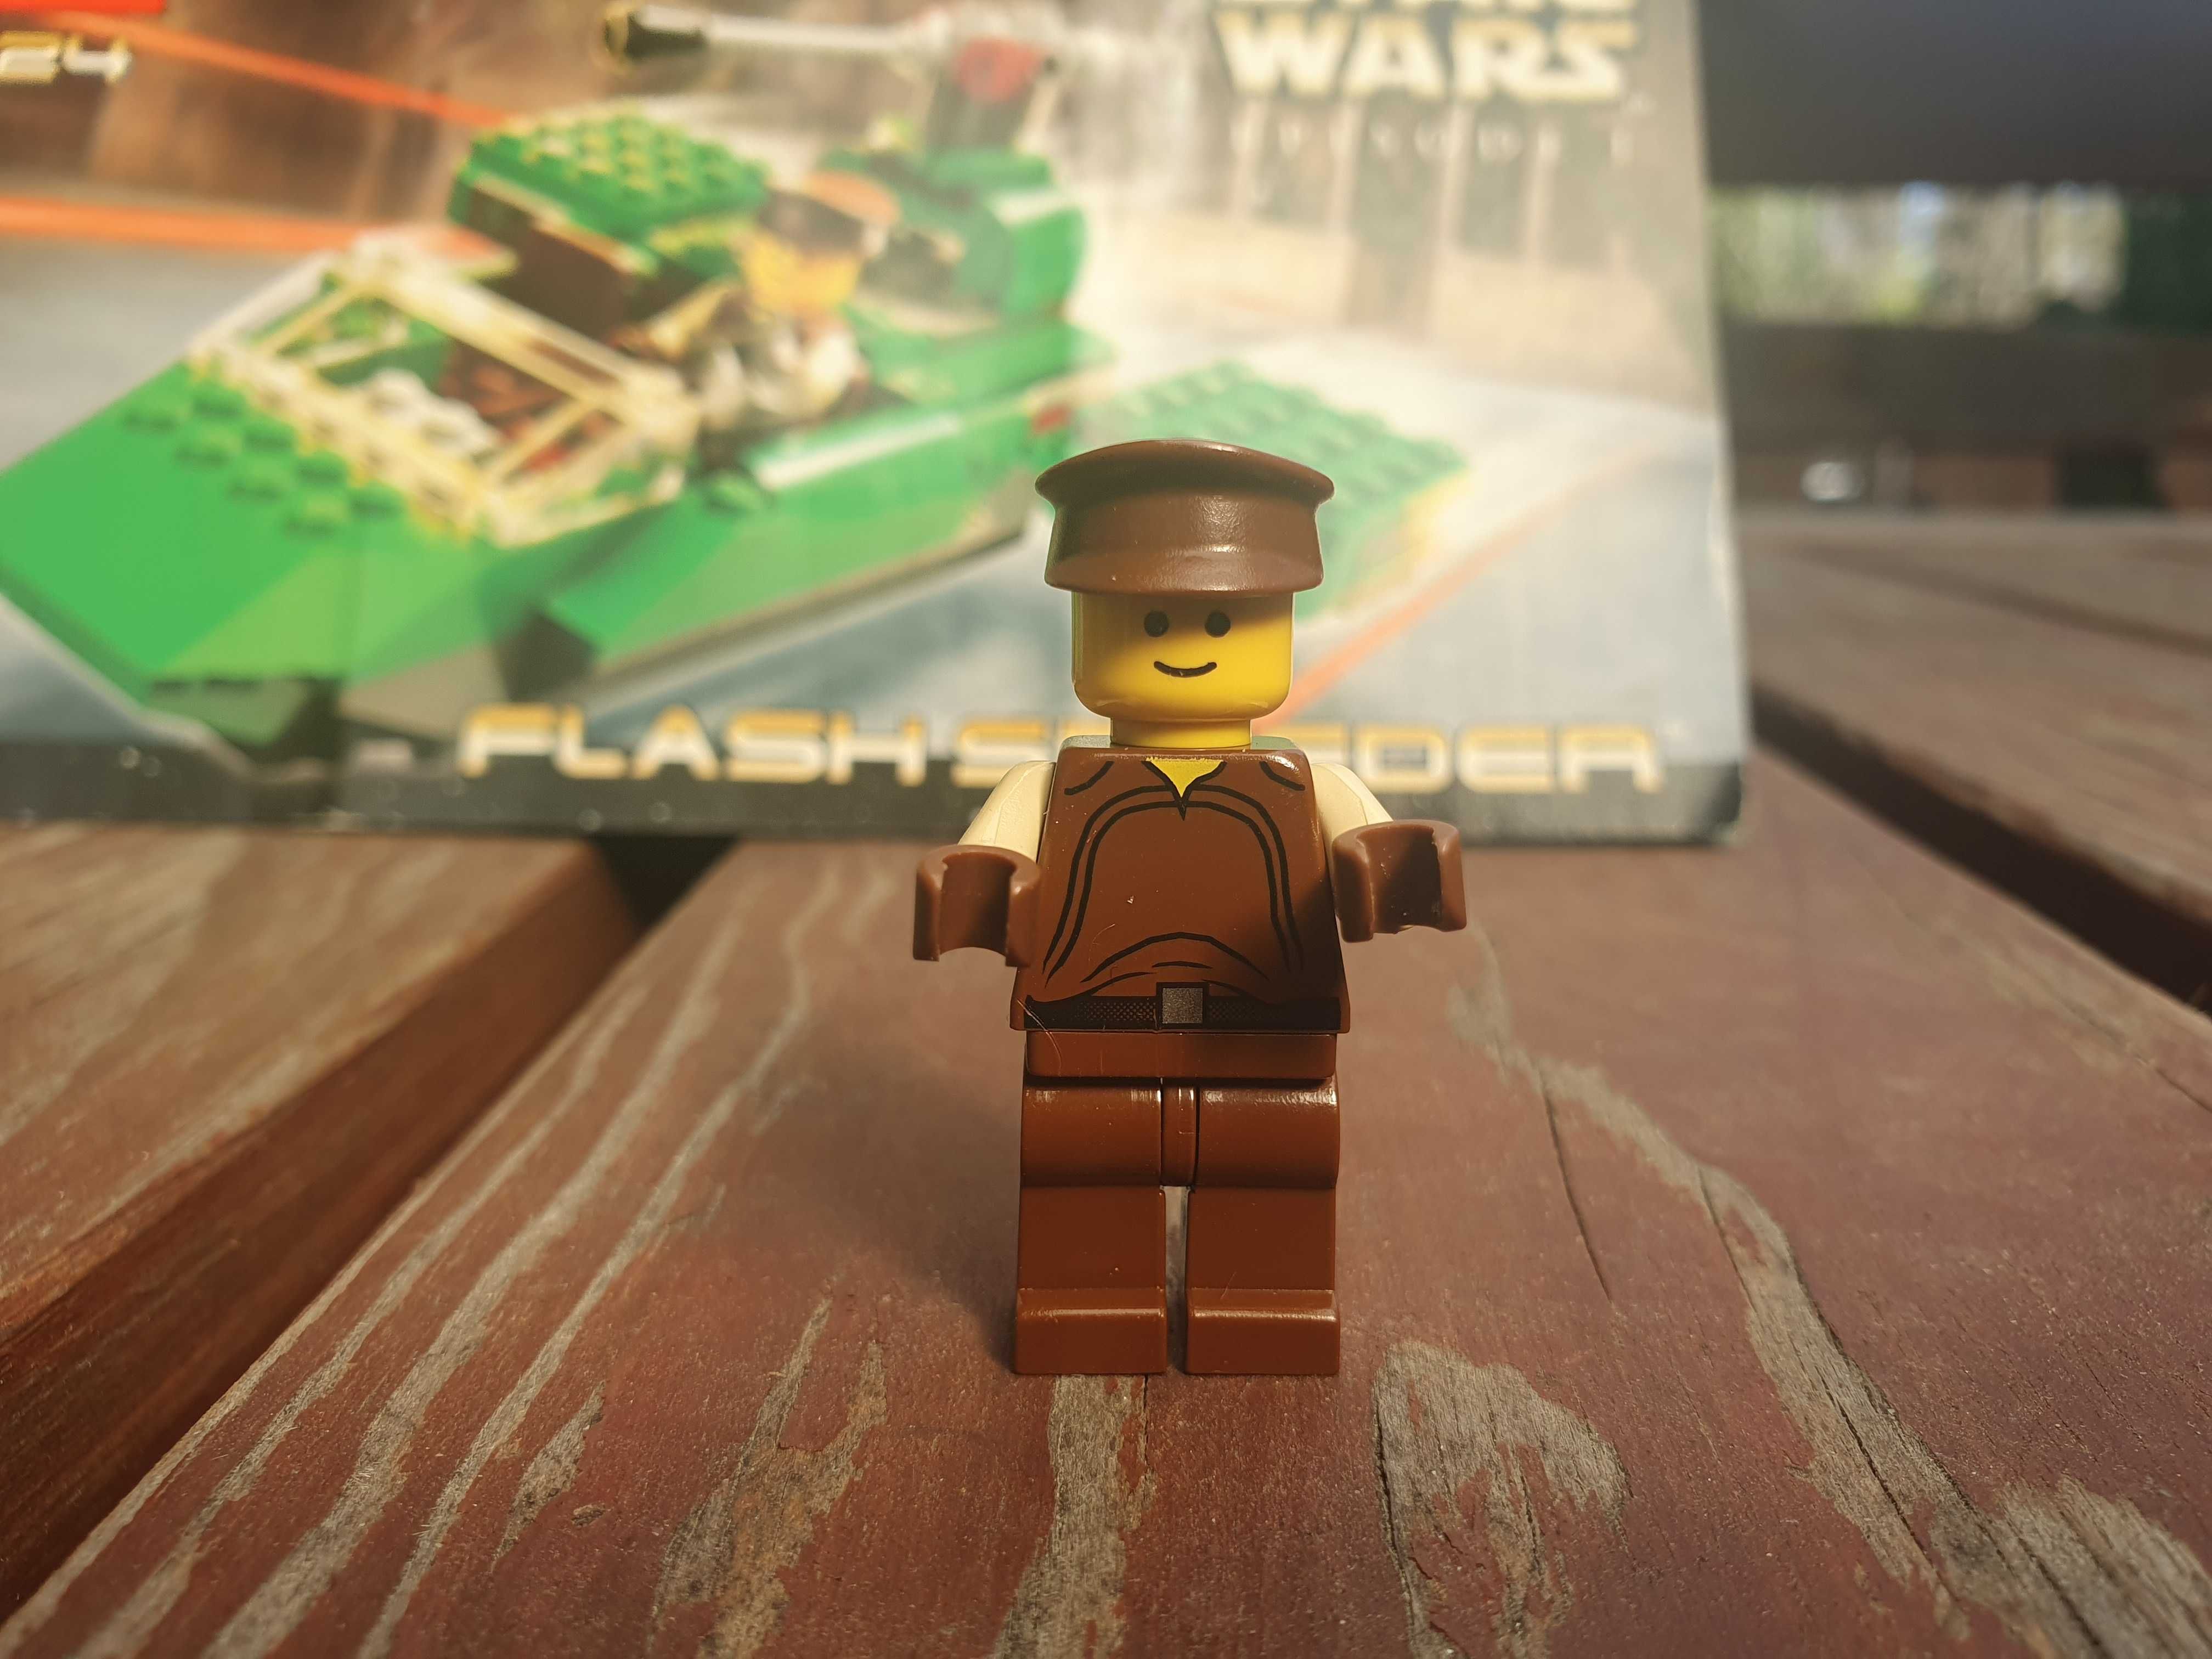 Lego 7124 Star Wars